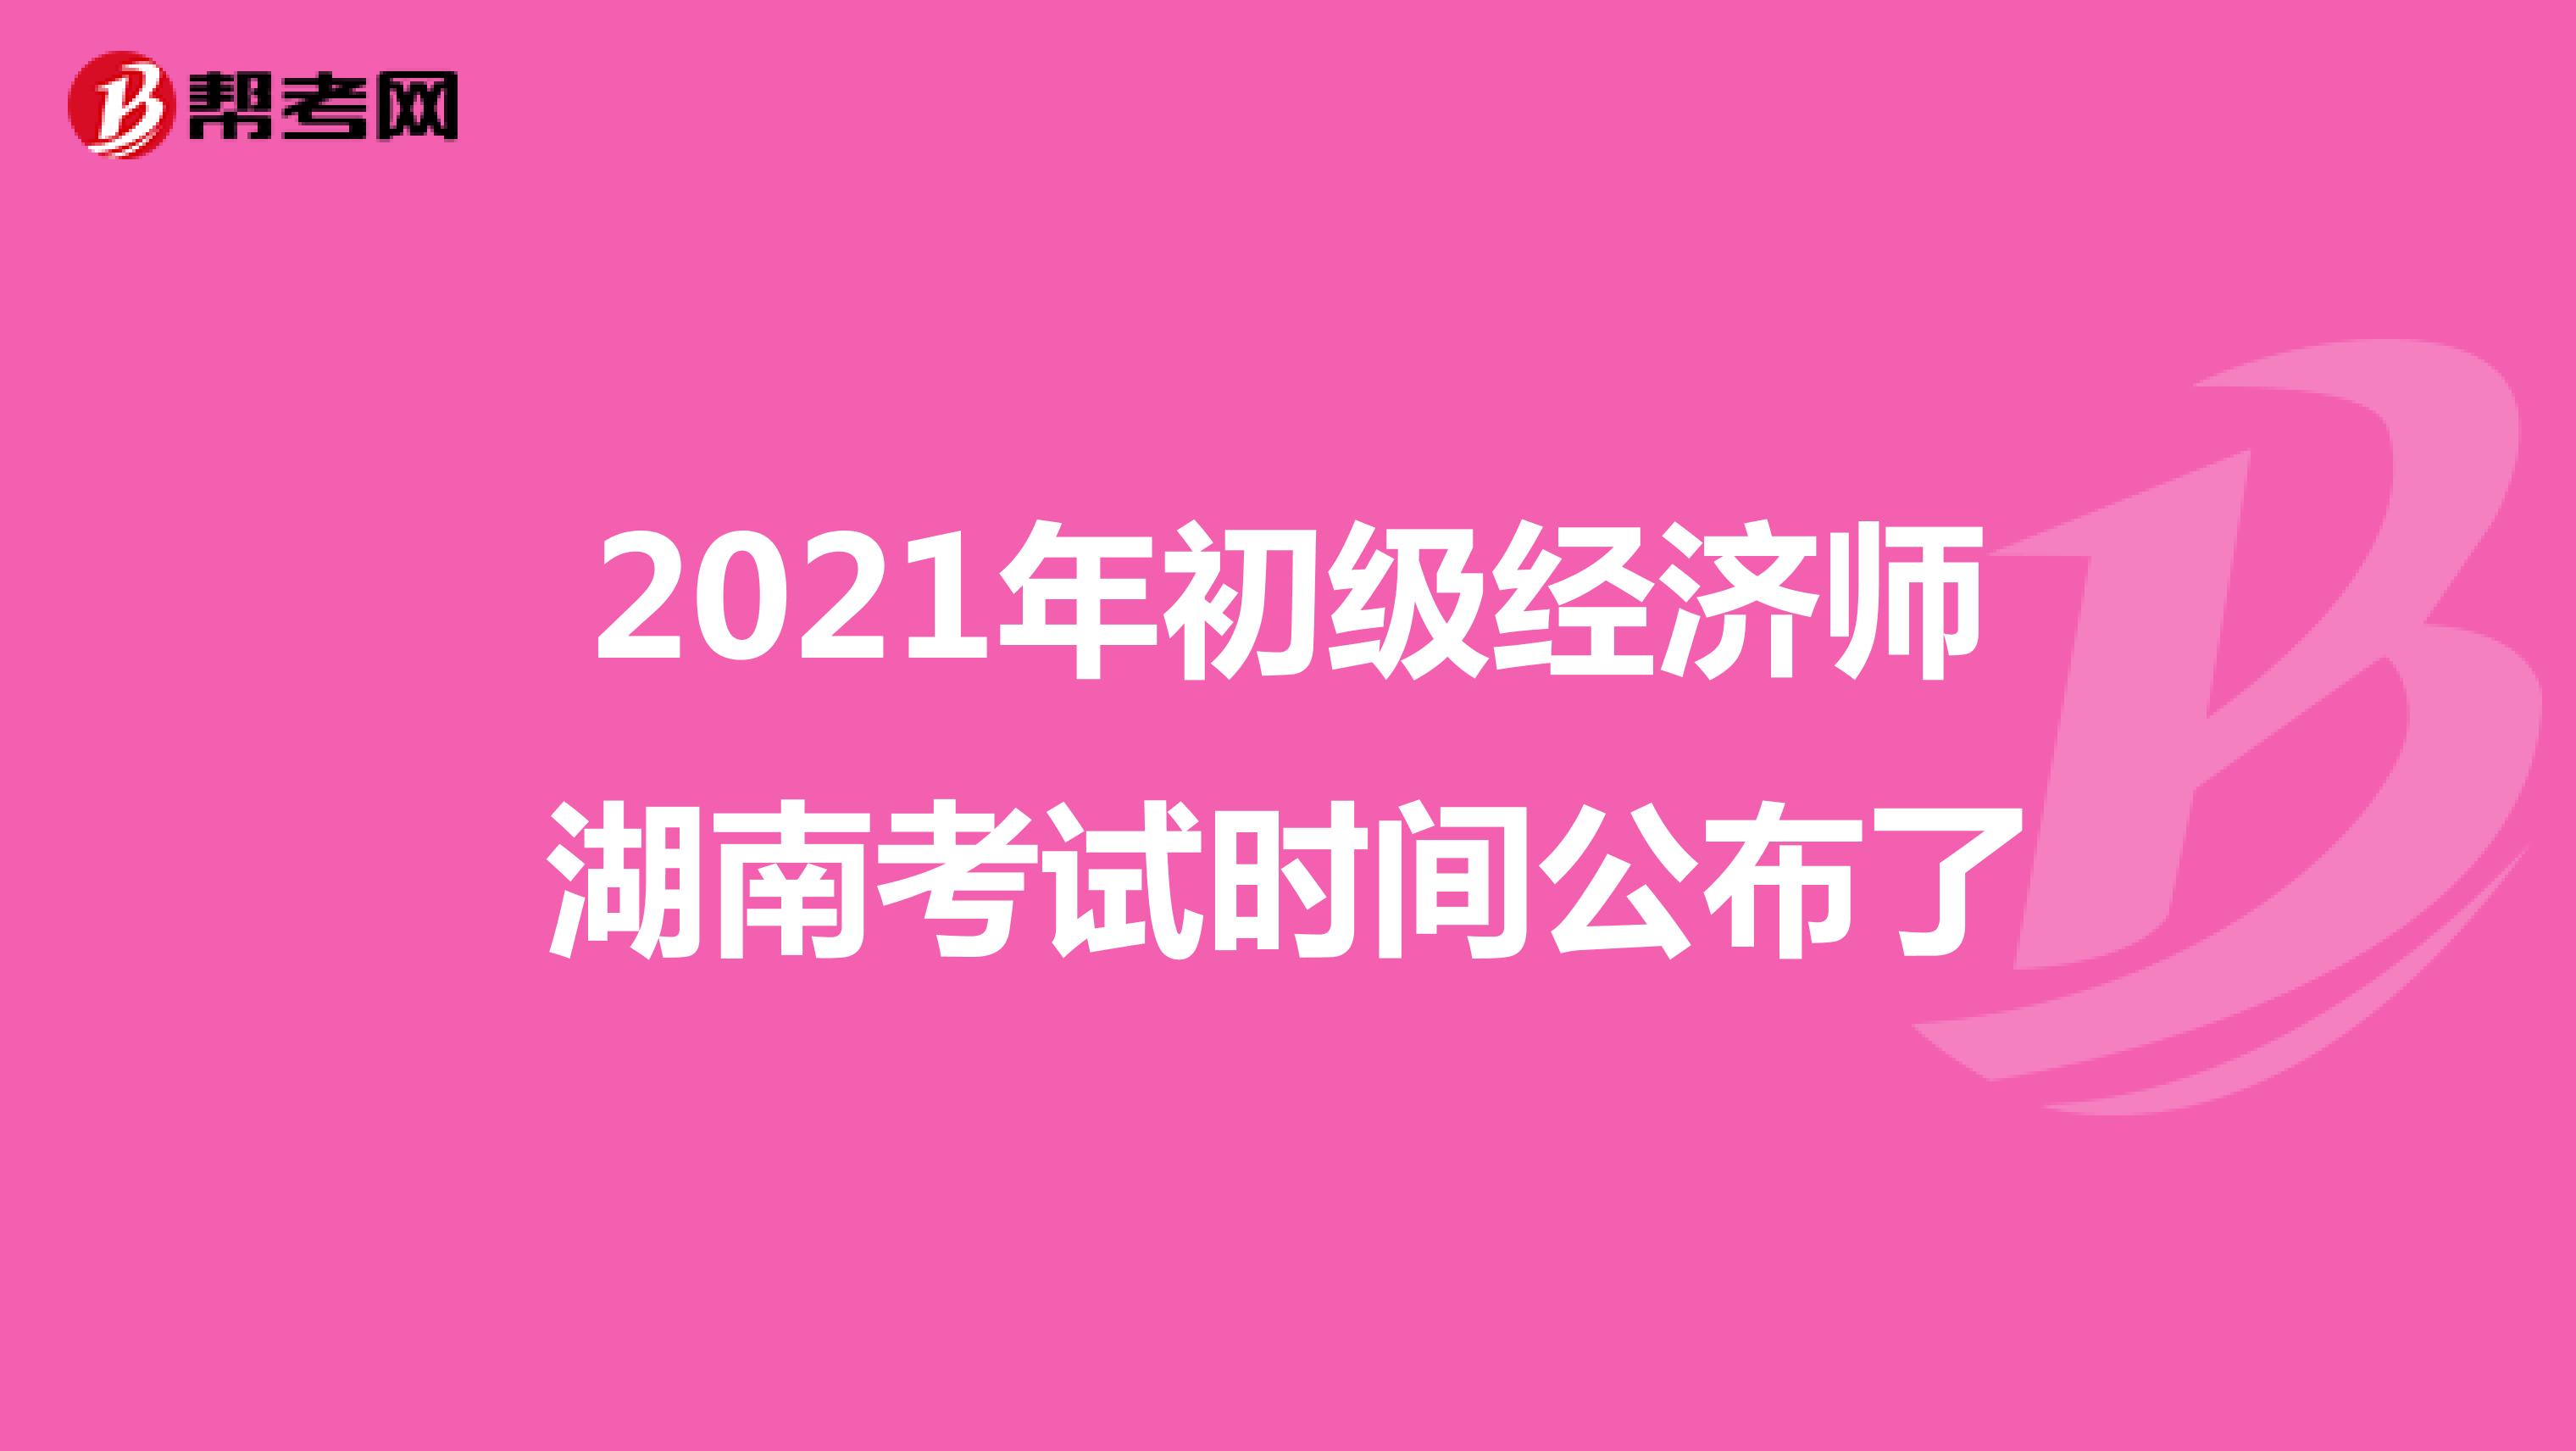 2021年初级经济师湖南考试时间公布了